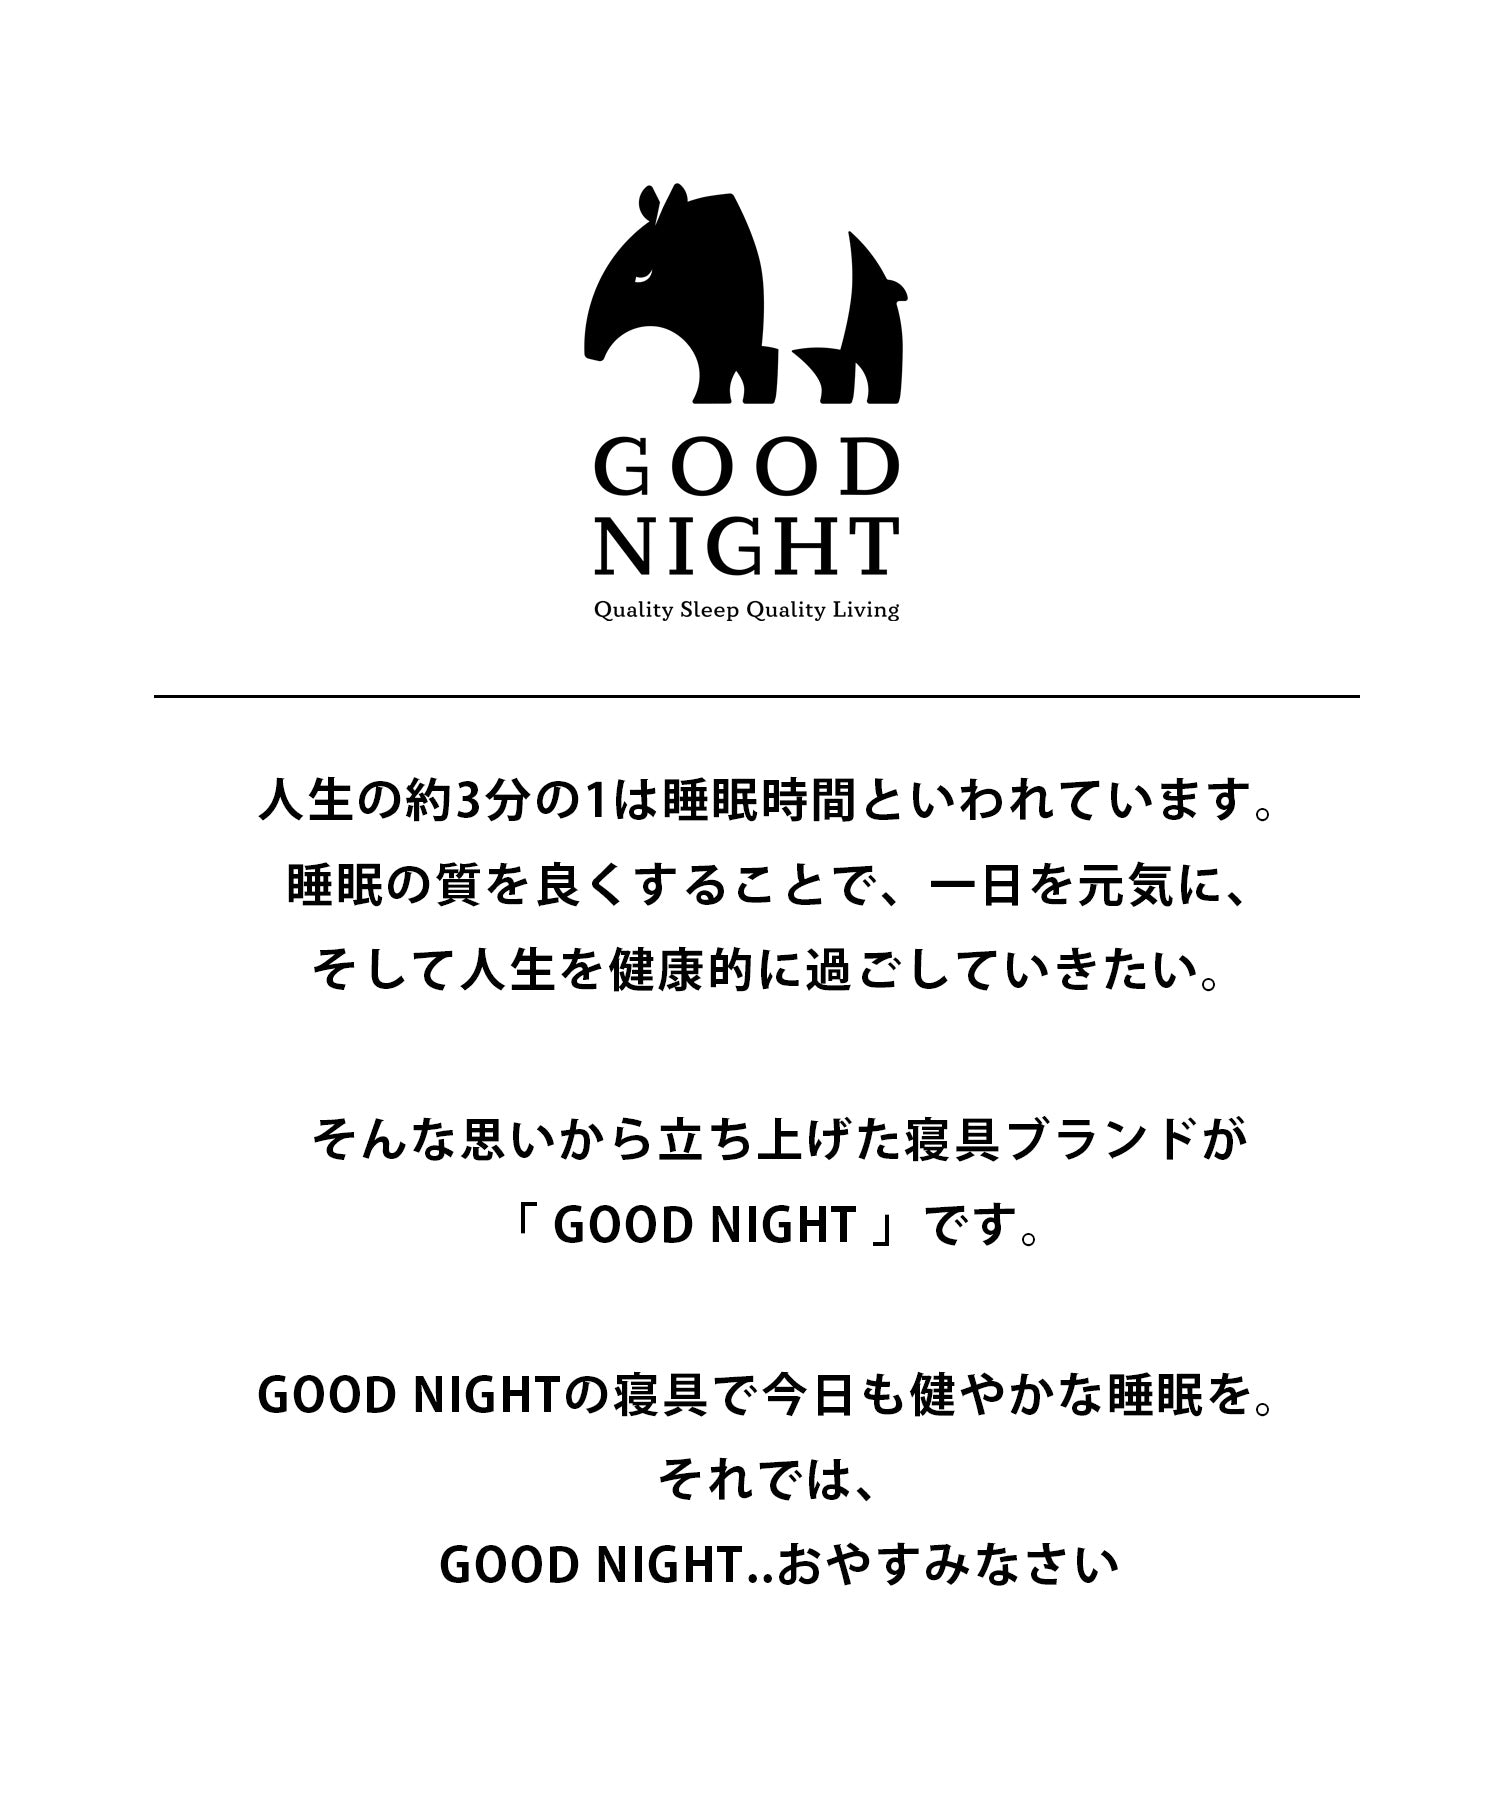 【GOOD NIGHT】マルチポジション枕